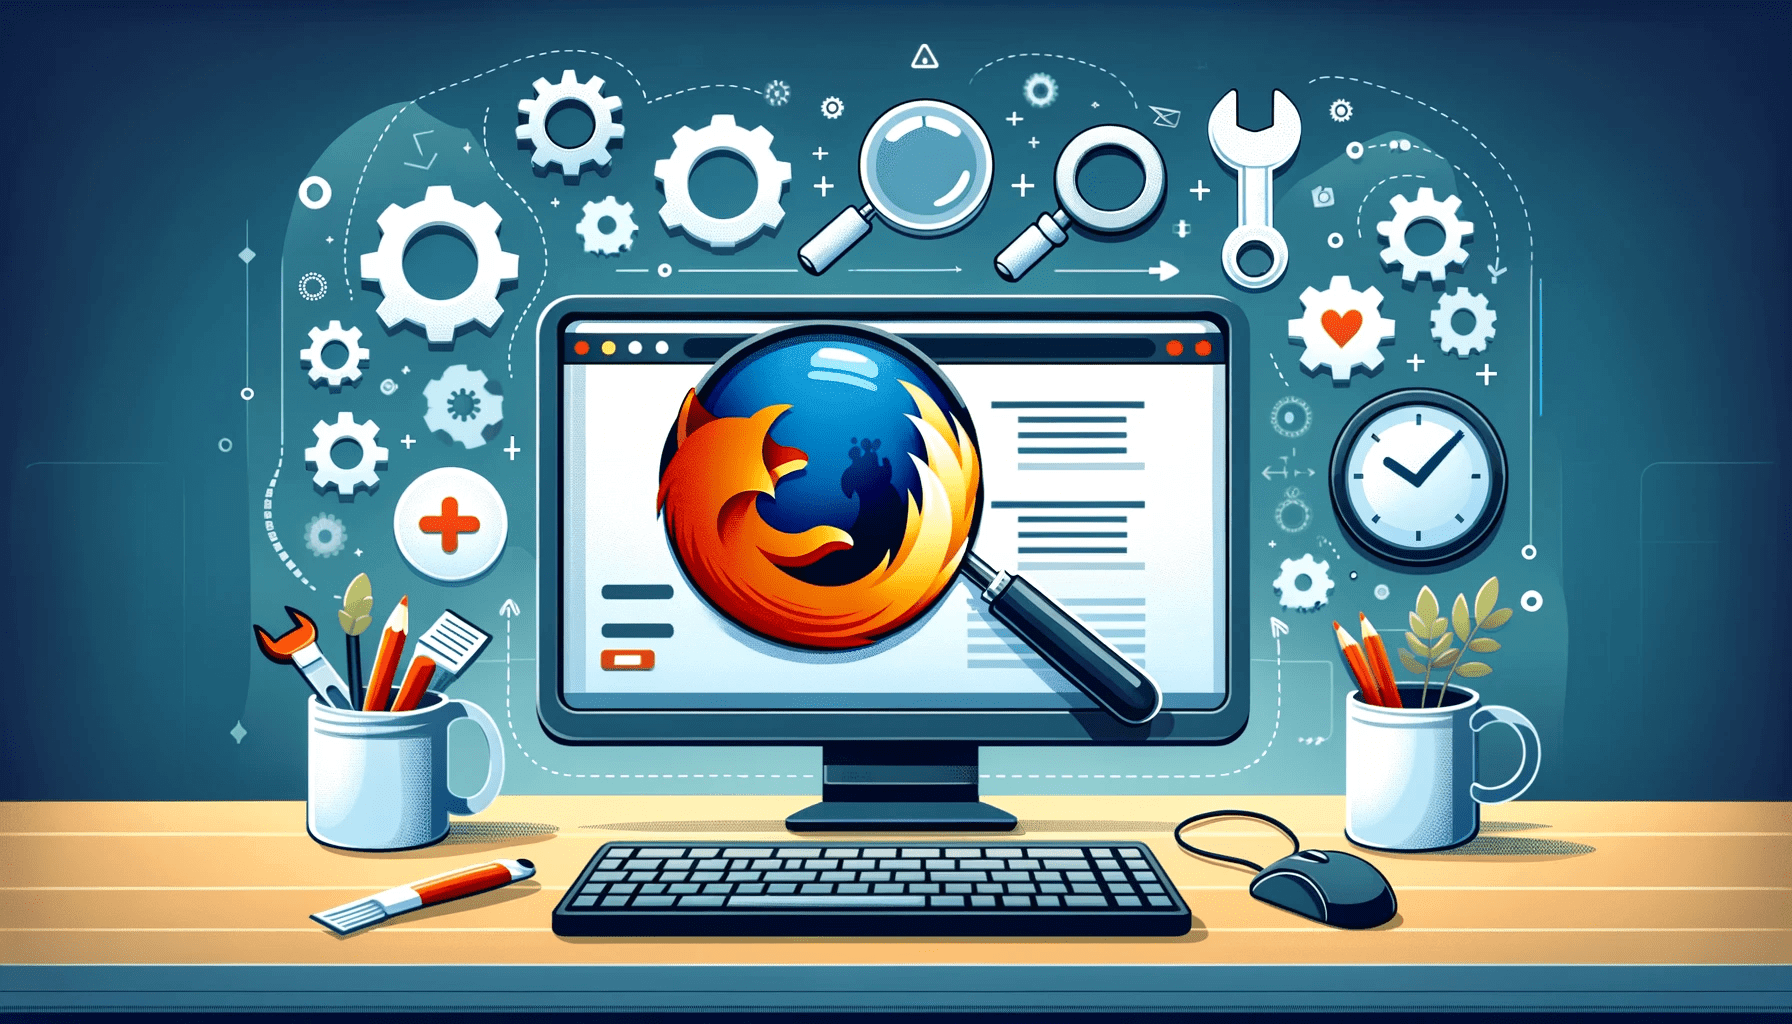 How to Fix “SSL_ERROR_RX_RECORD_TOO_LONG” Firefox Error